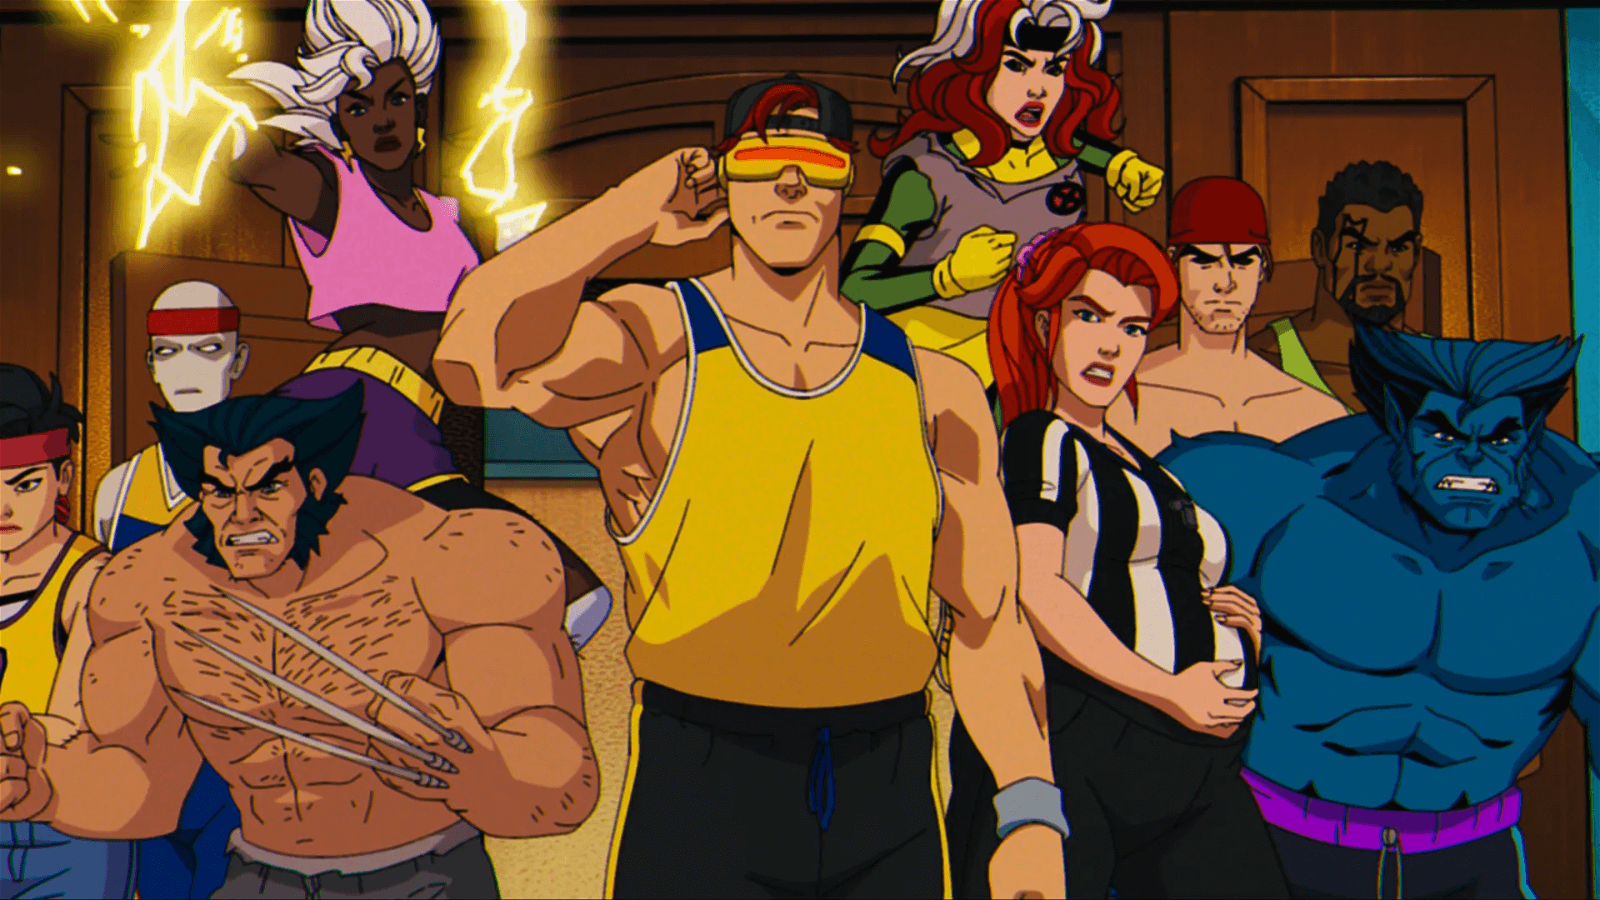 Still from X-Men '97 (Marvel Studios)